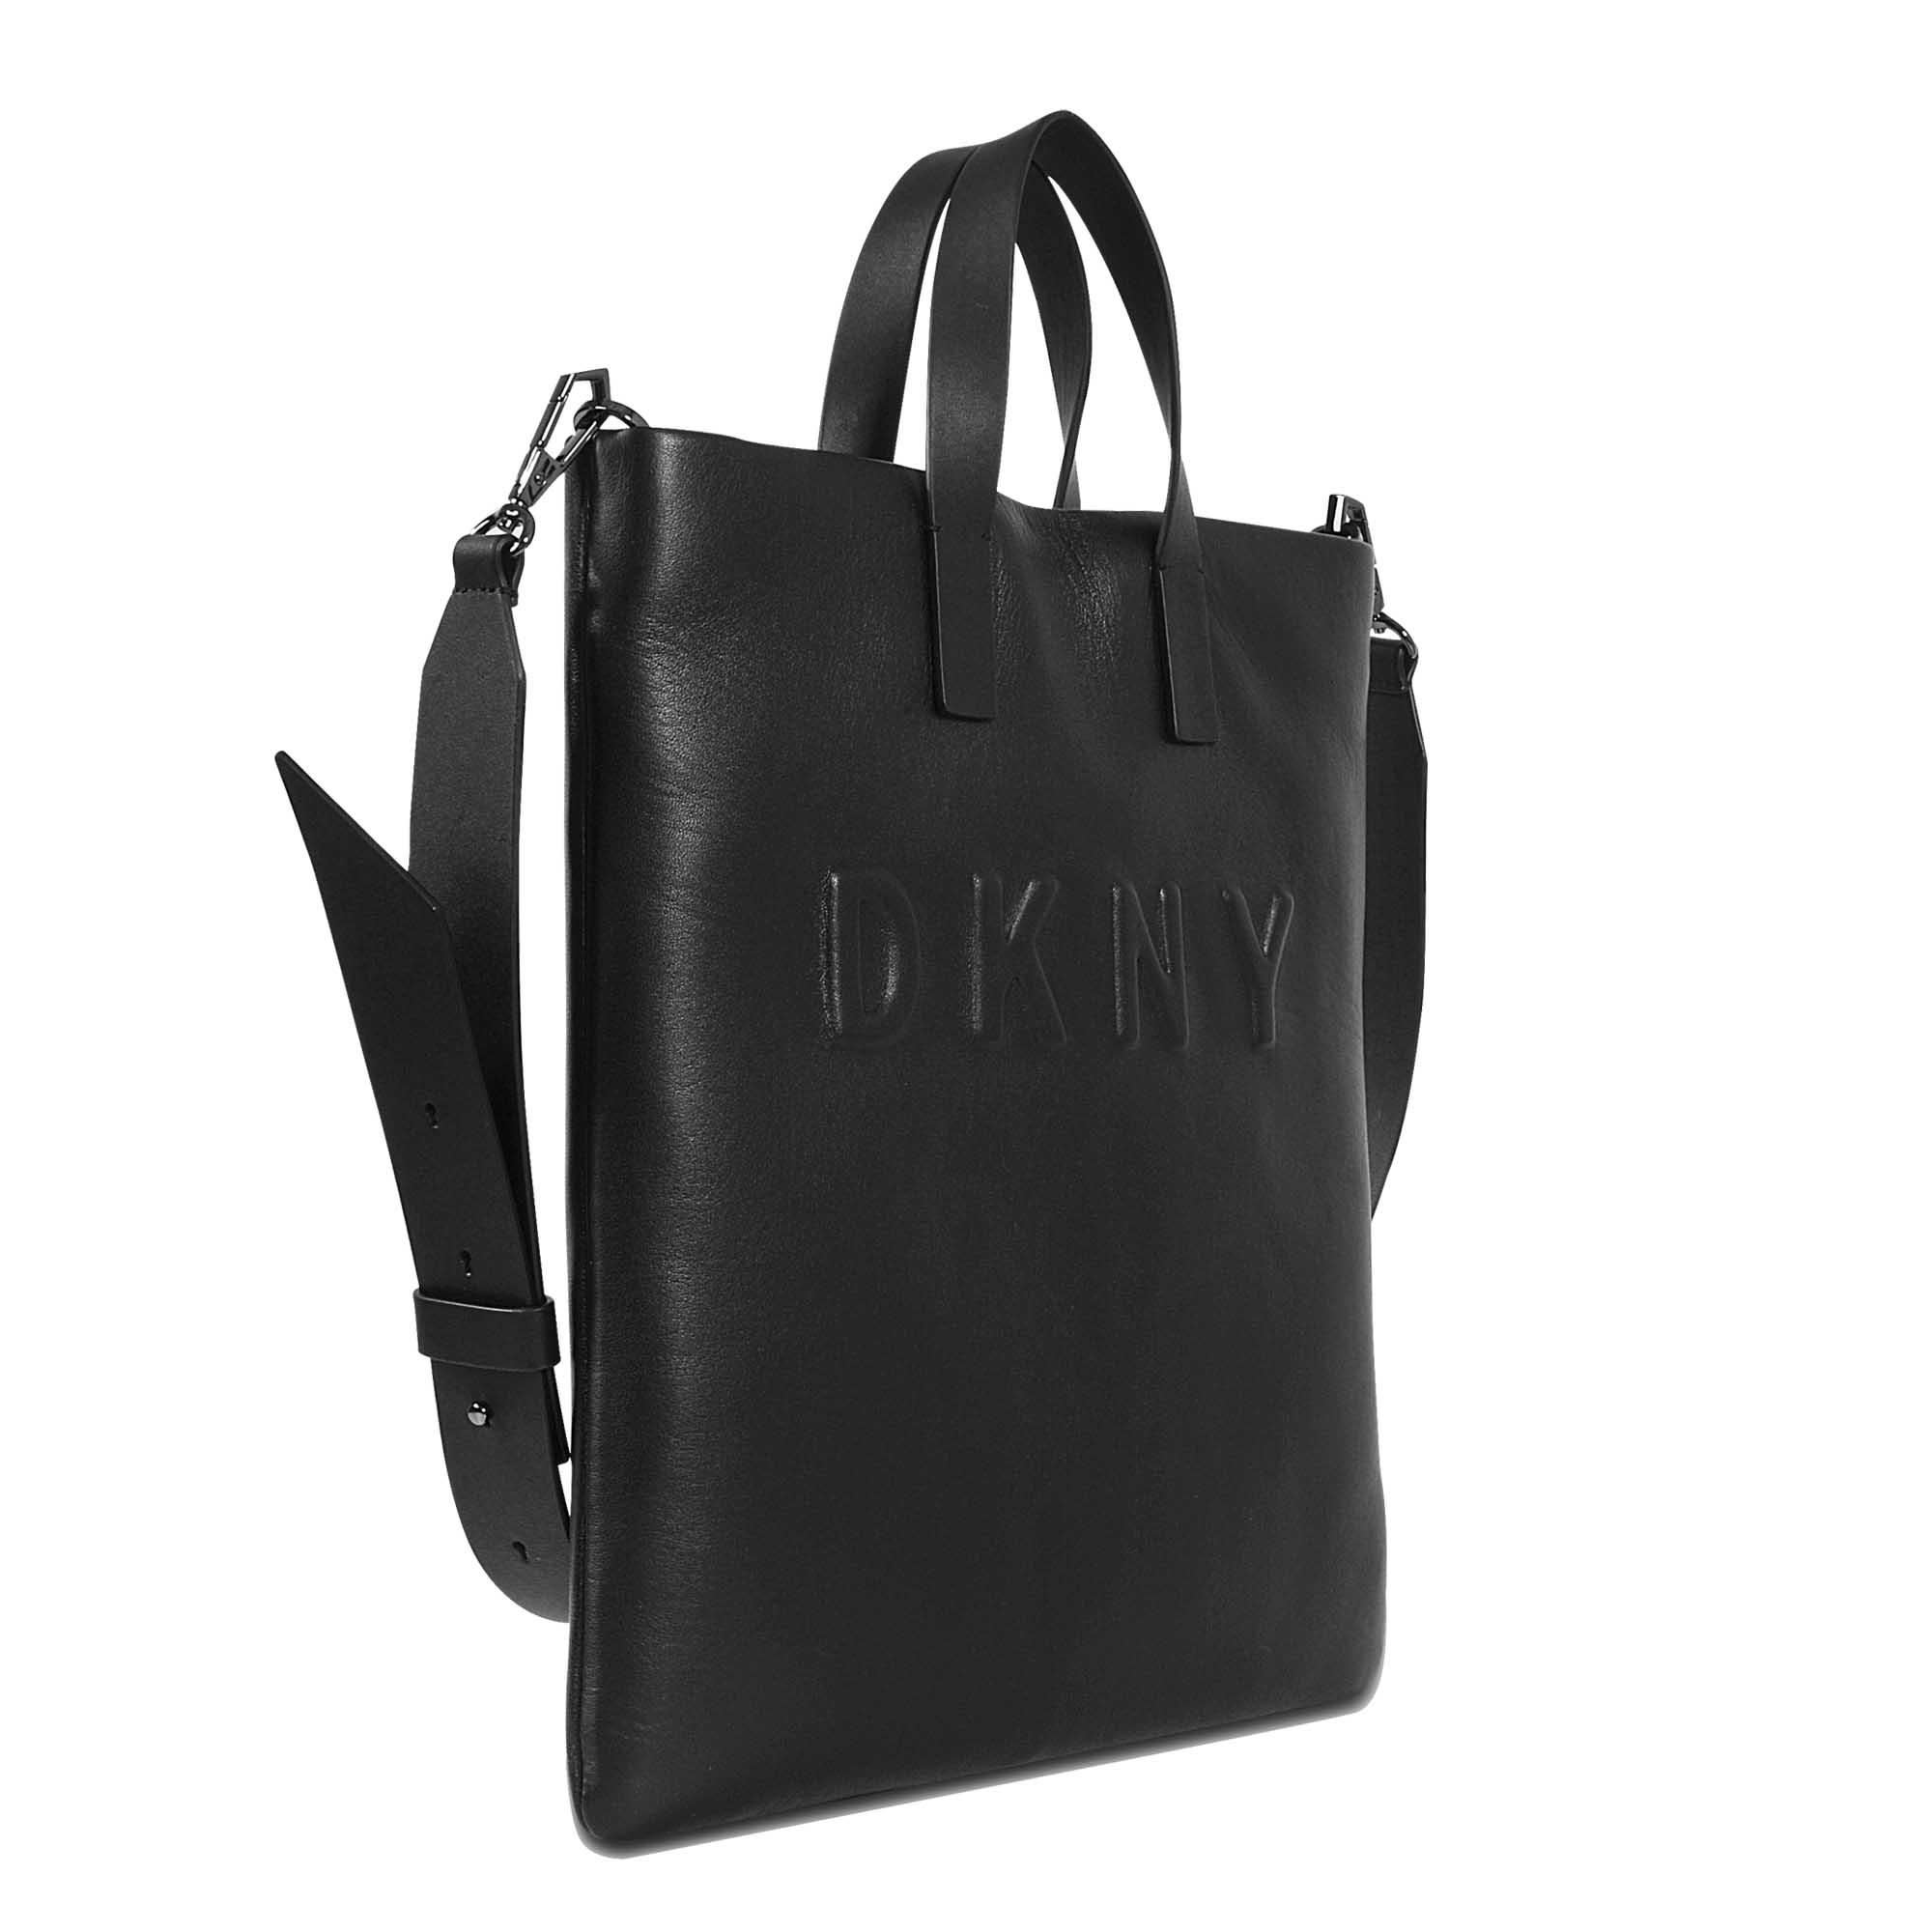 DKNY Leather Debossed Logo Tote Bag in Black - Lyst